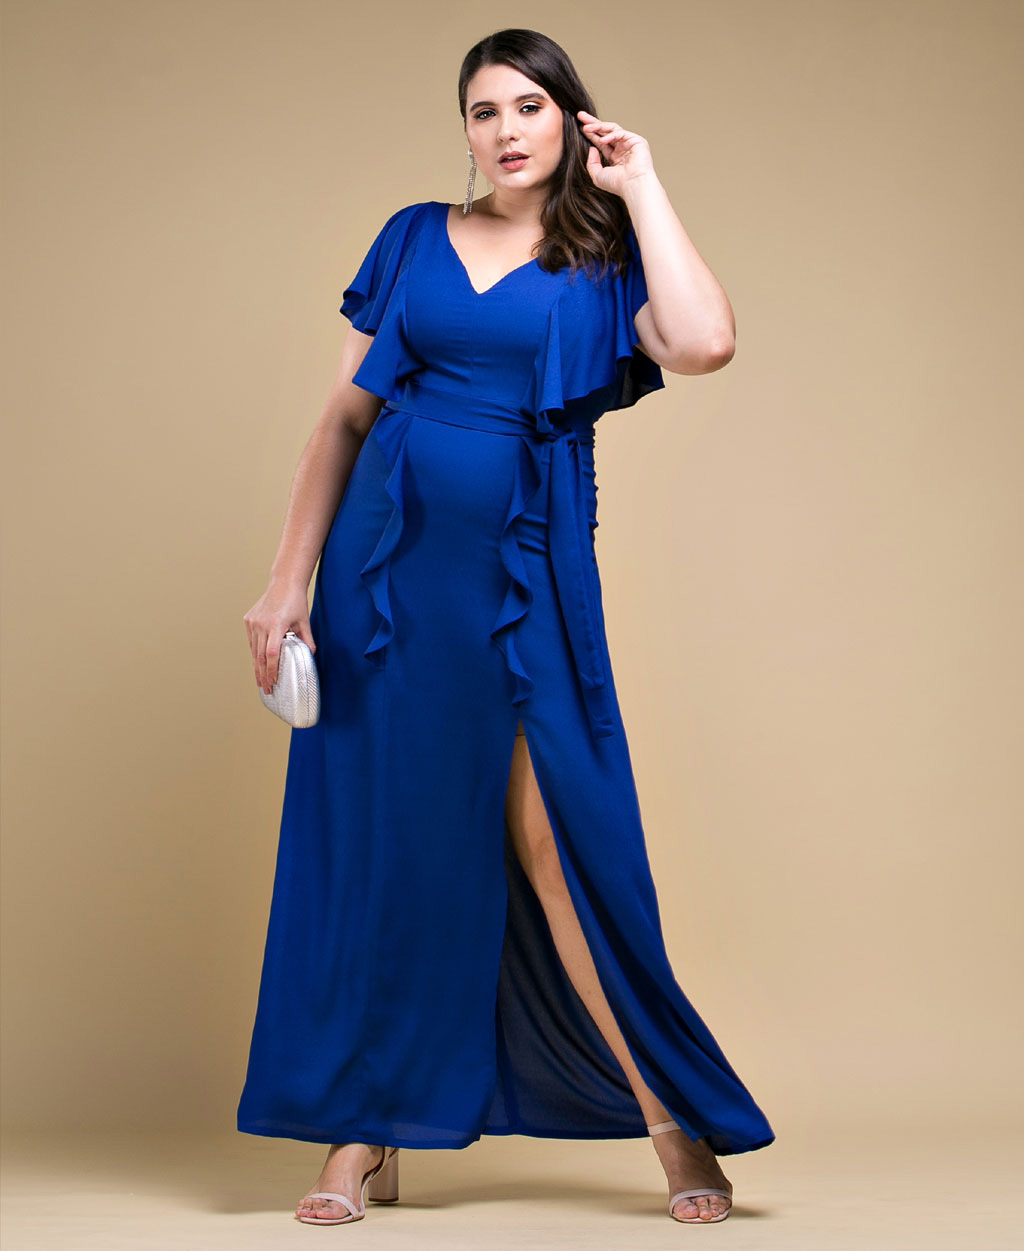 Vestido de festa  longo azul royal com babado - Ref. 2475